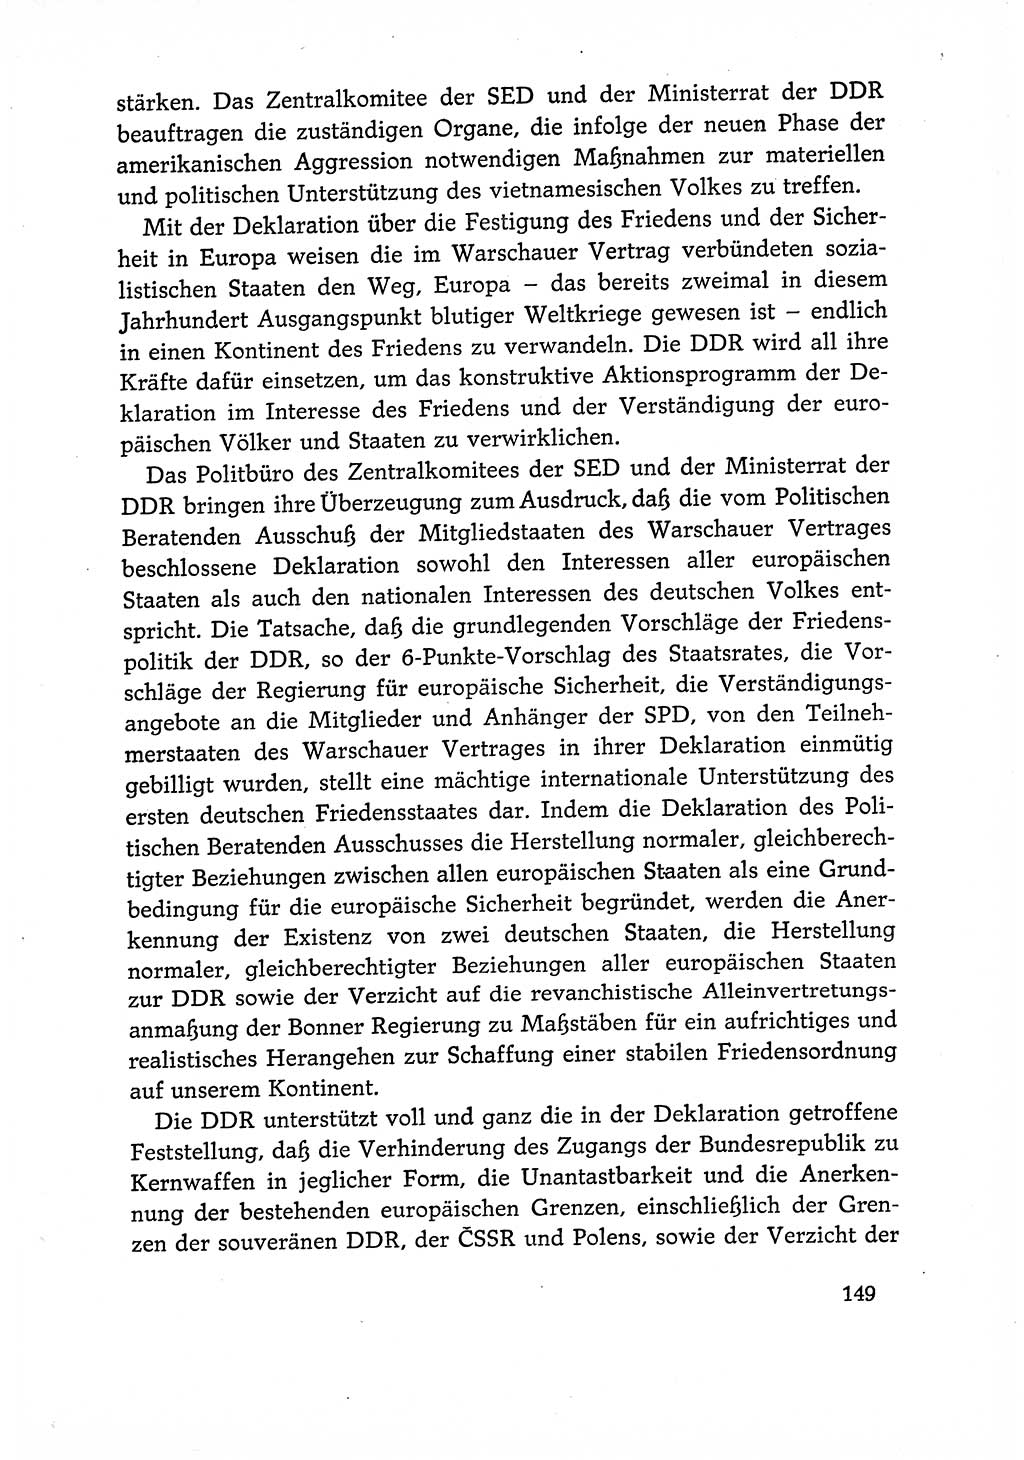 Dokumente der Sozialistischen Einheitspartei Deutschlands (SED) [Deutsche Demokratische Republik (DDR)] 1966-1967, Seite 149 (Dok. SED DDR 1966-1967, S. 149)